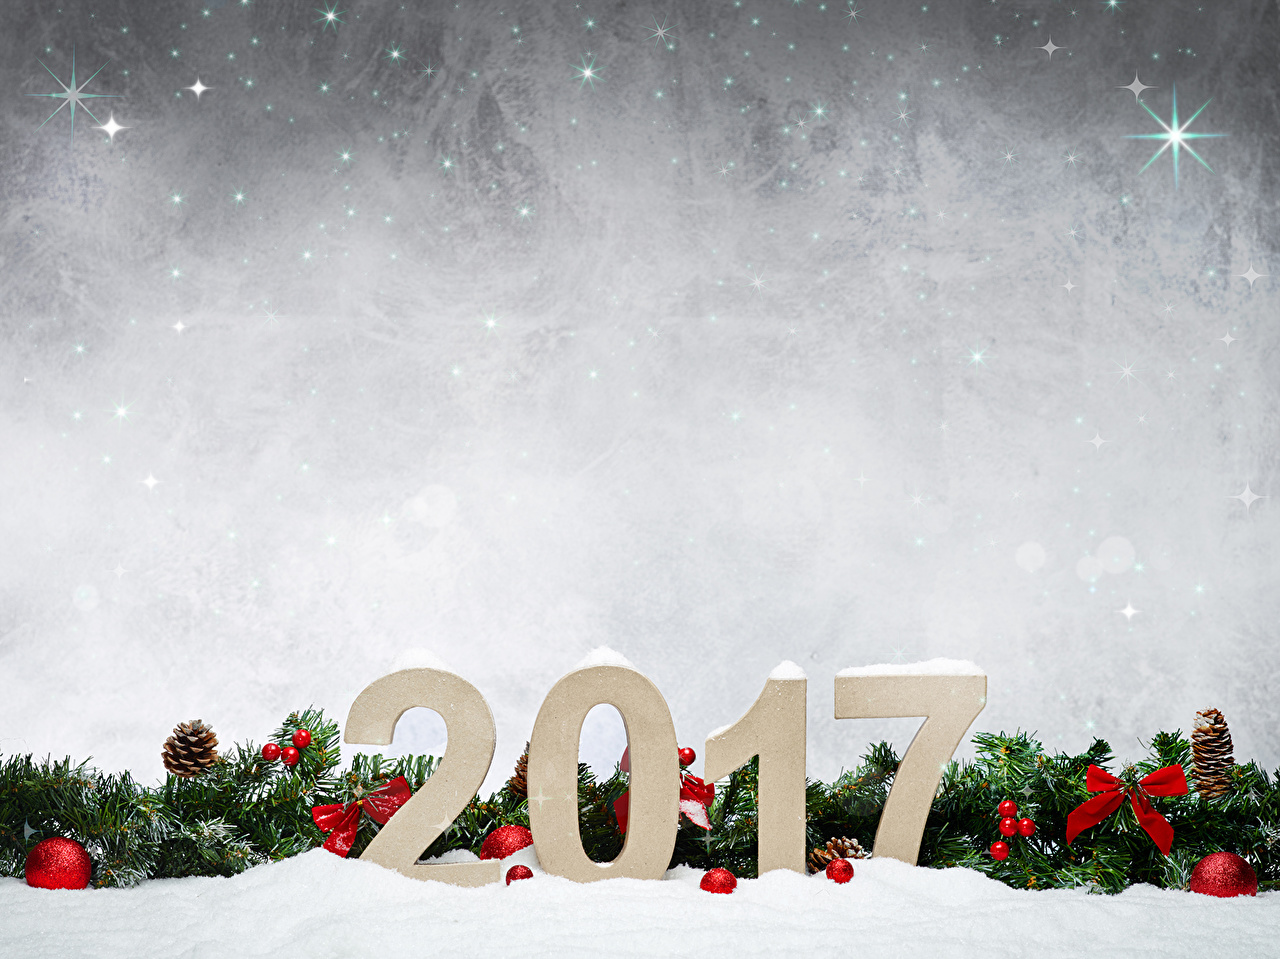 2017 년 벽지,눈,겨울,나무,크리스마스 이브,하늘